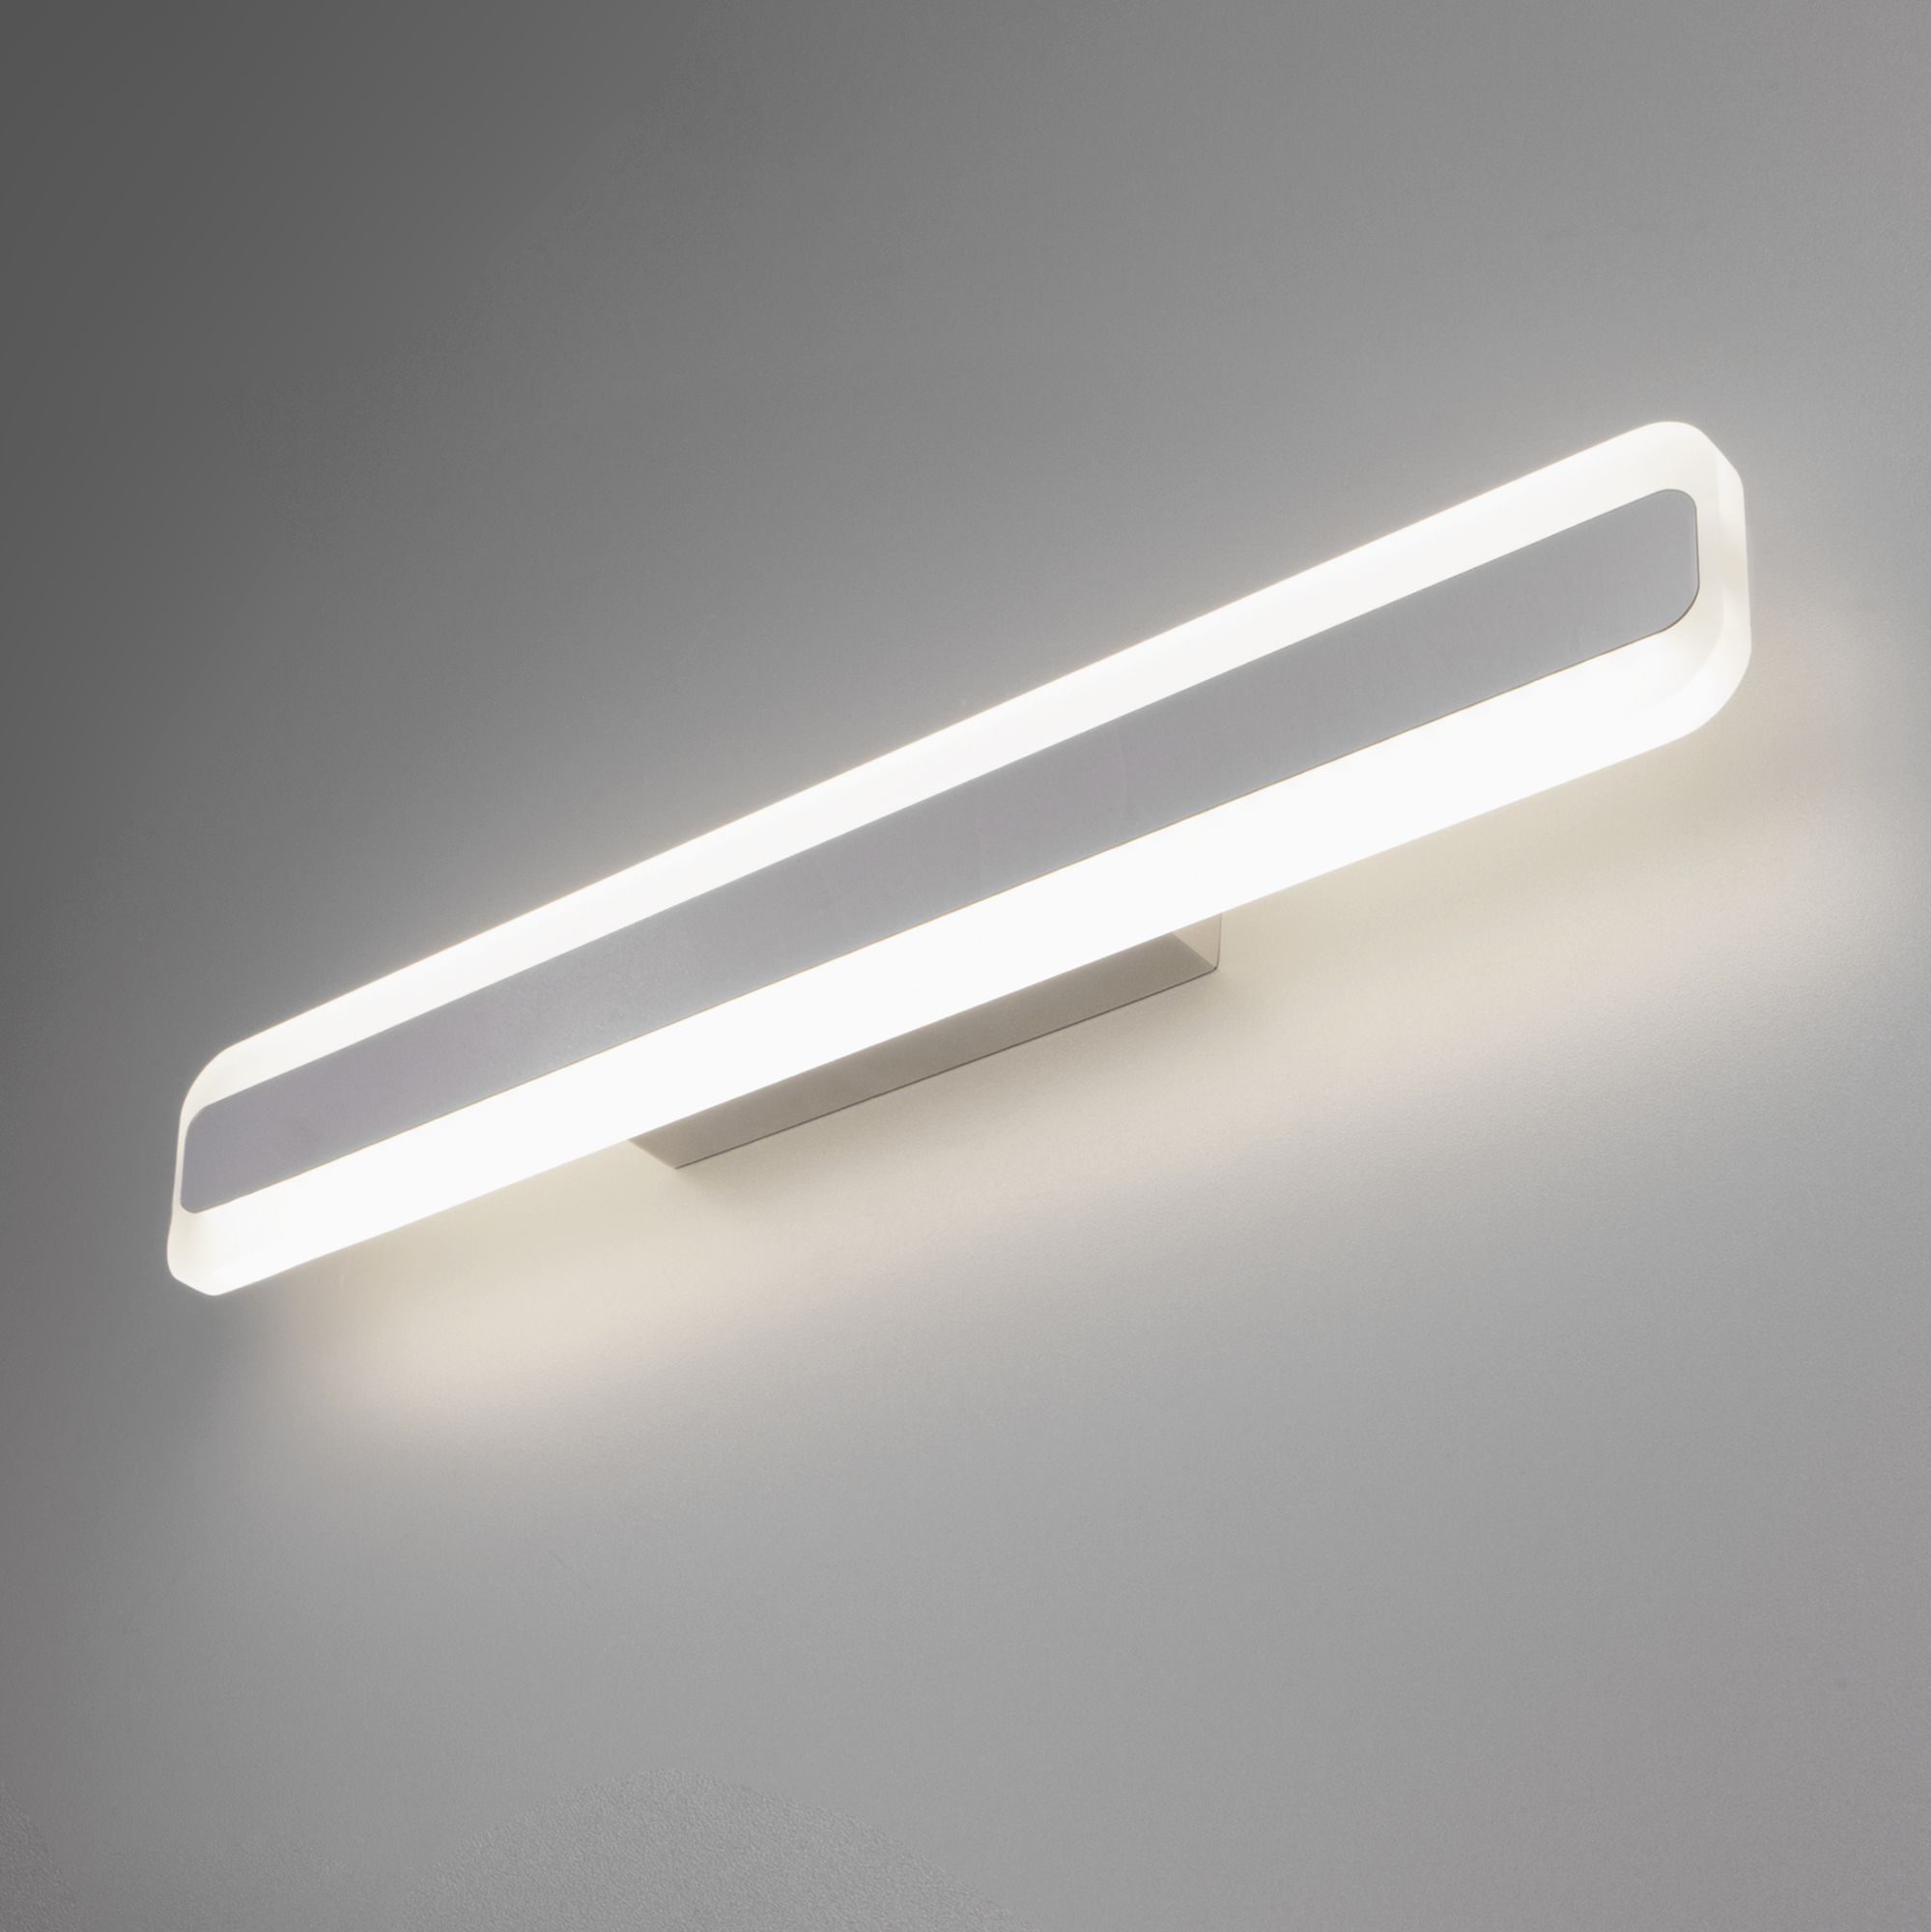 Настенный светодиодный светильник Ivata LED MRL LED 1085 хром